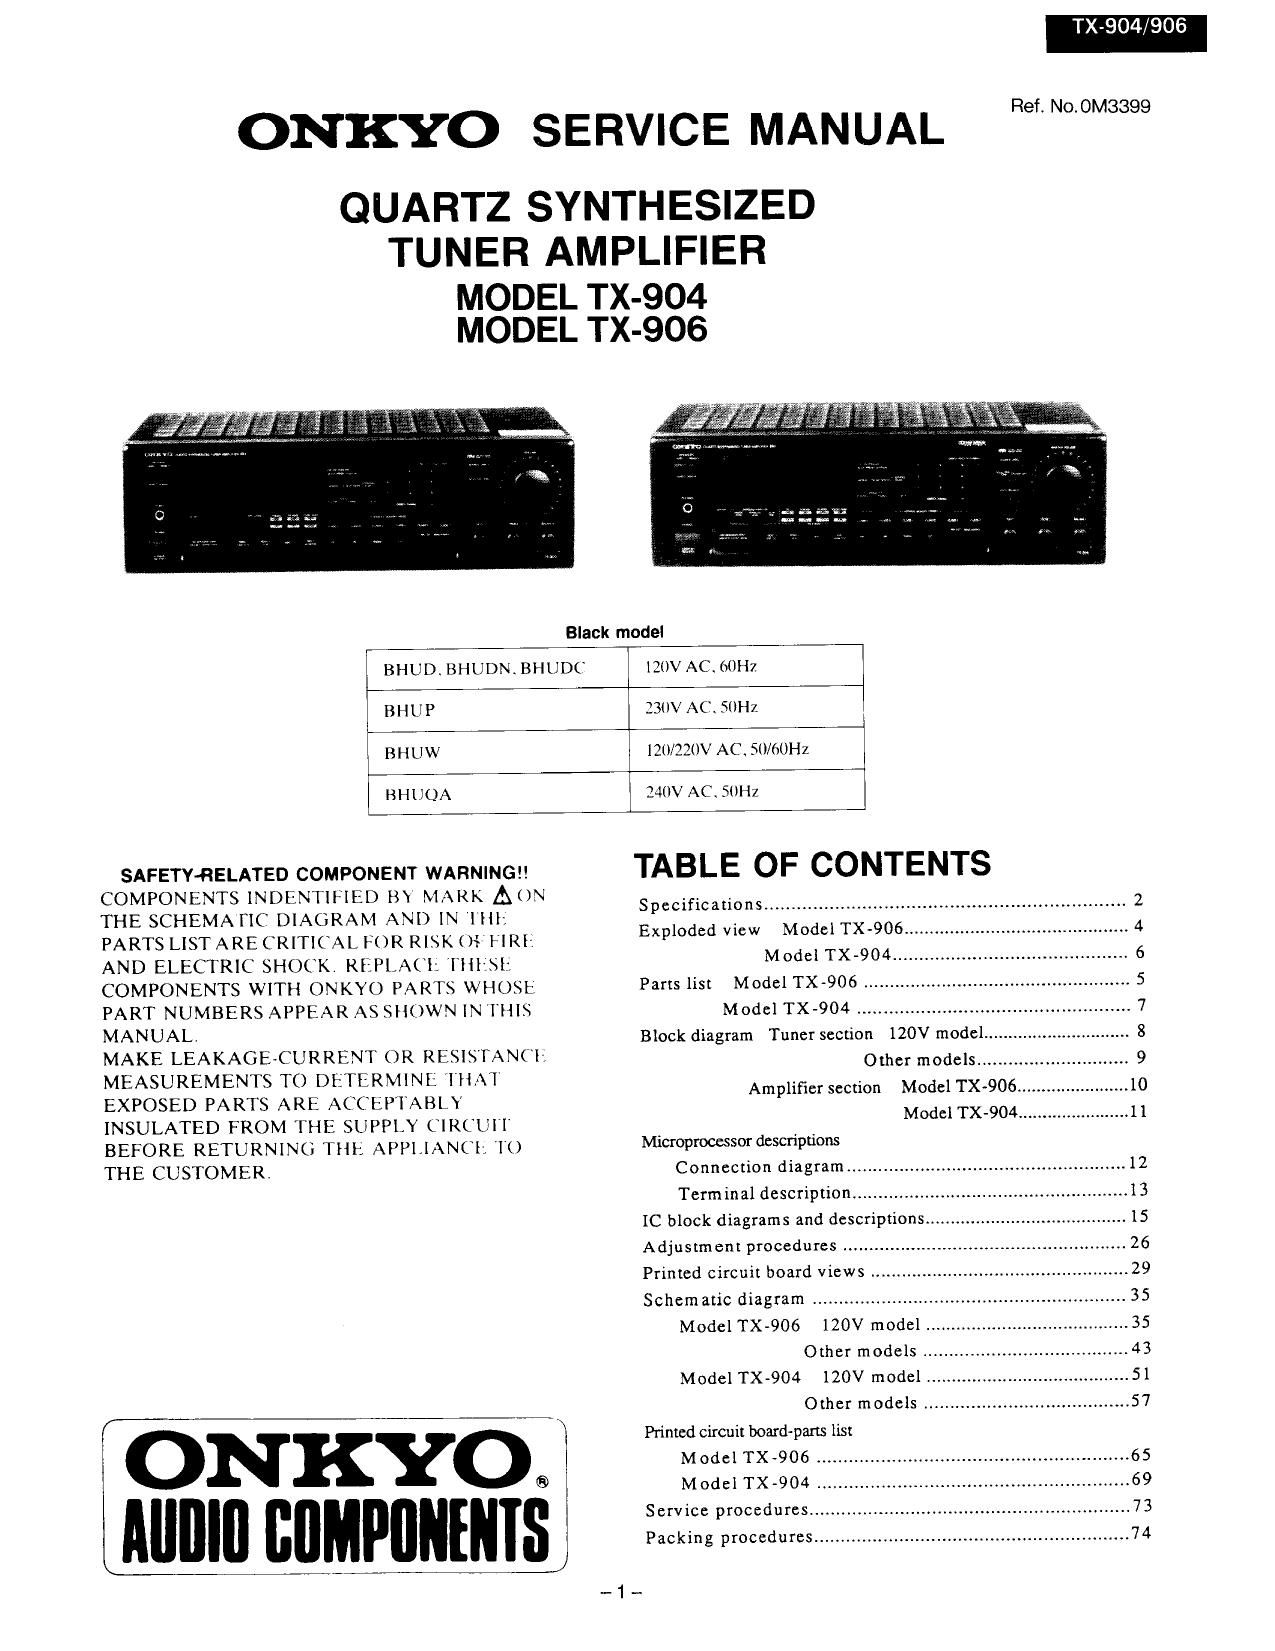 Onkyo TX 906 Service Manual